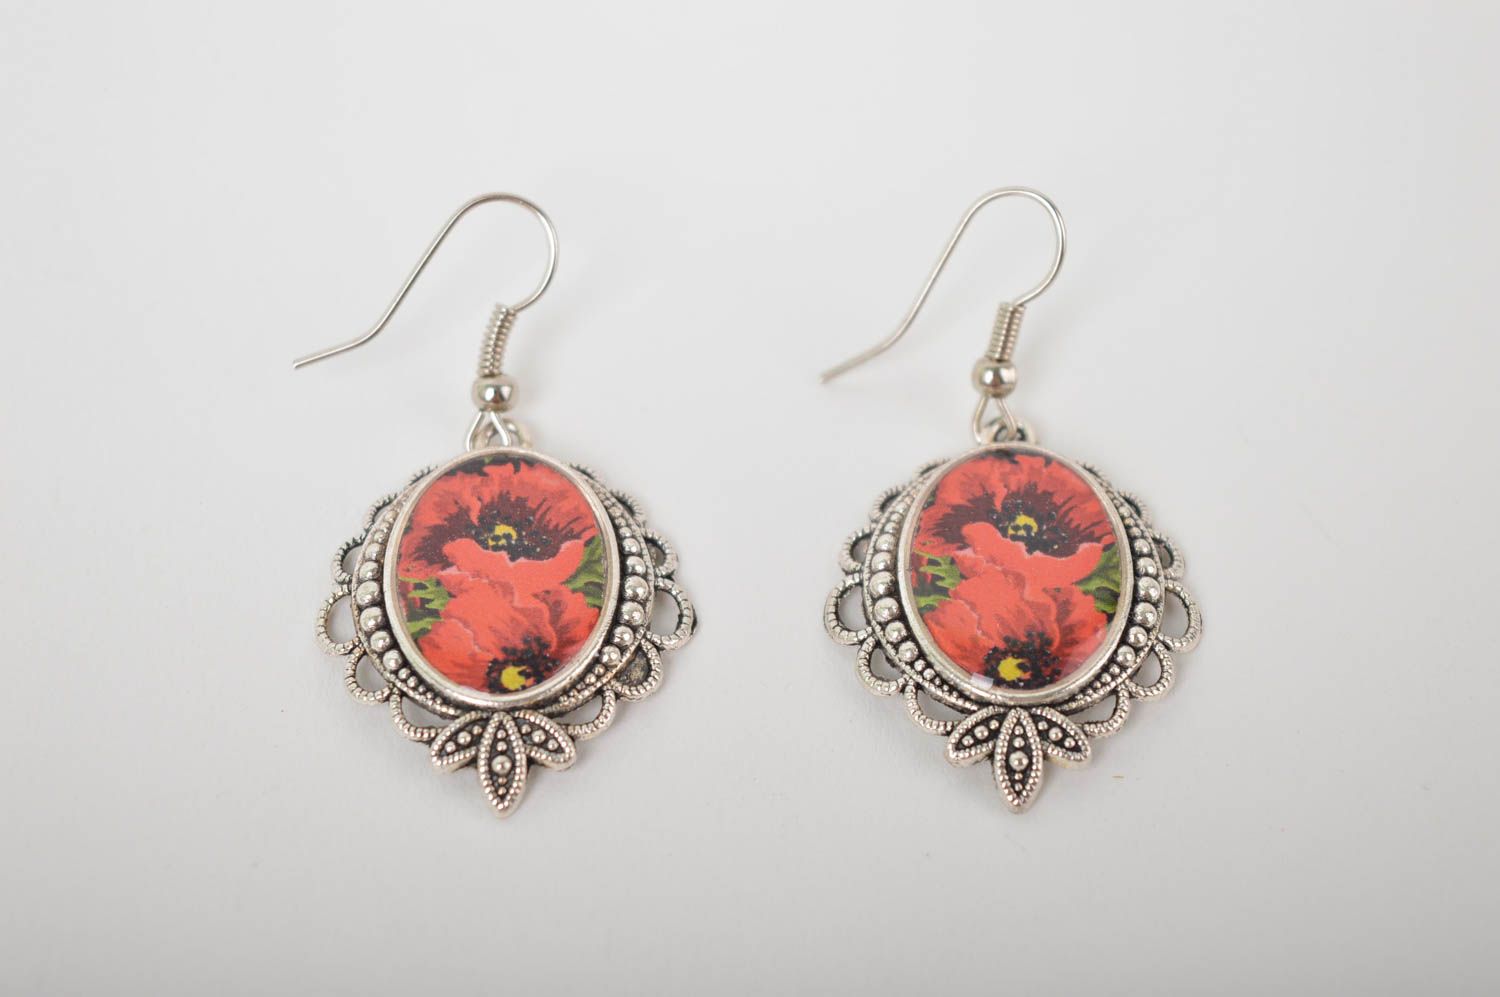 Handmade earrings designer jewelry earrings for women gifts for girls photo 2